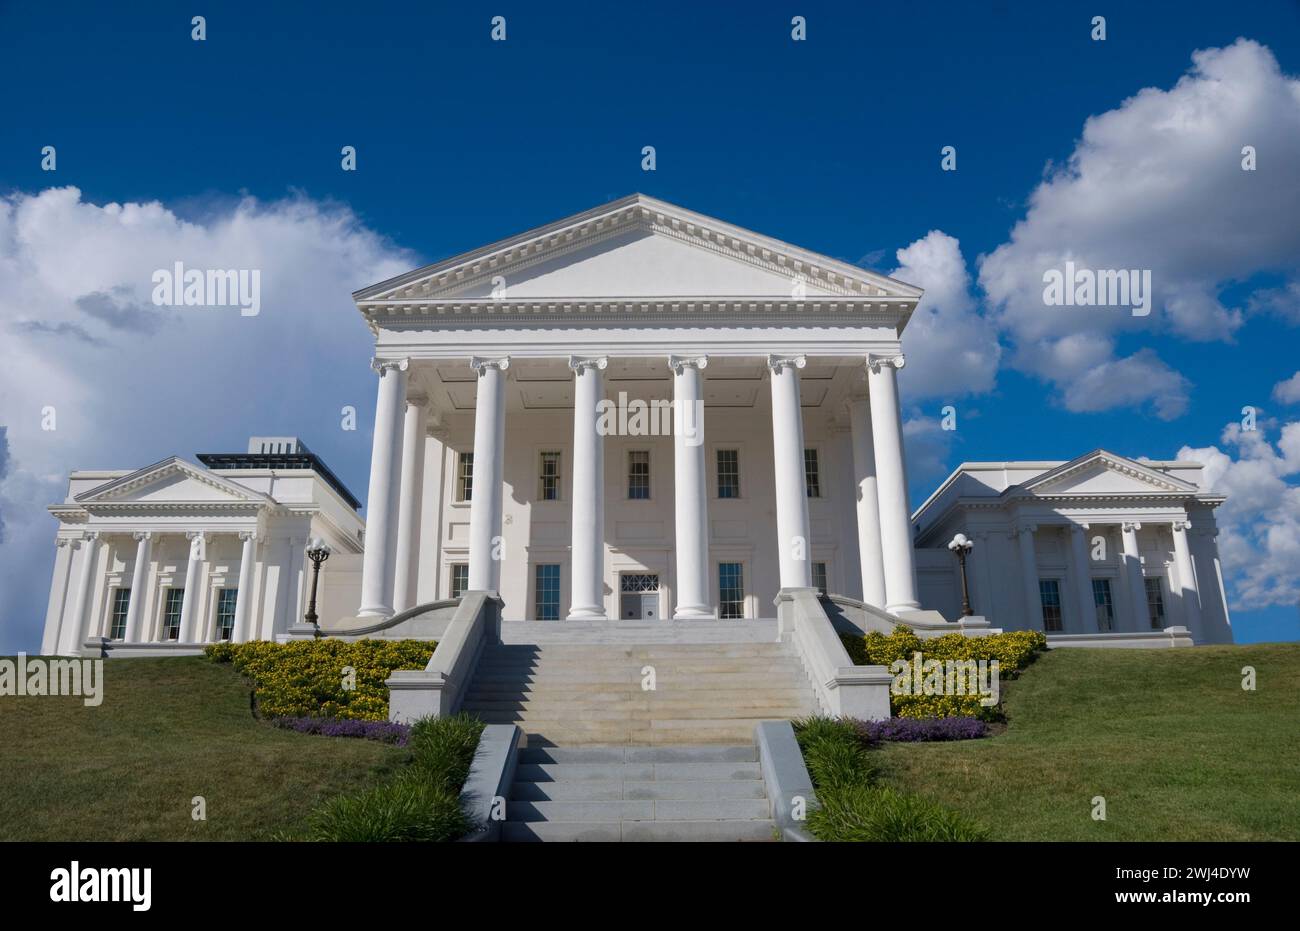 Virginia State Capitol - struttura neoclassica progettata da Thomas Jefferson il secondo presidente degli Stati Uniti - Richmond, Virginia Foto Stock